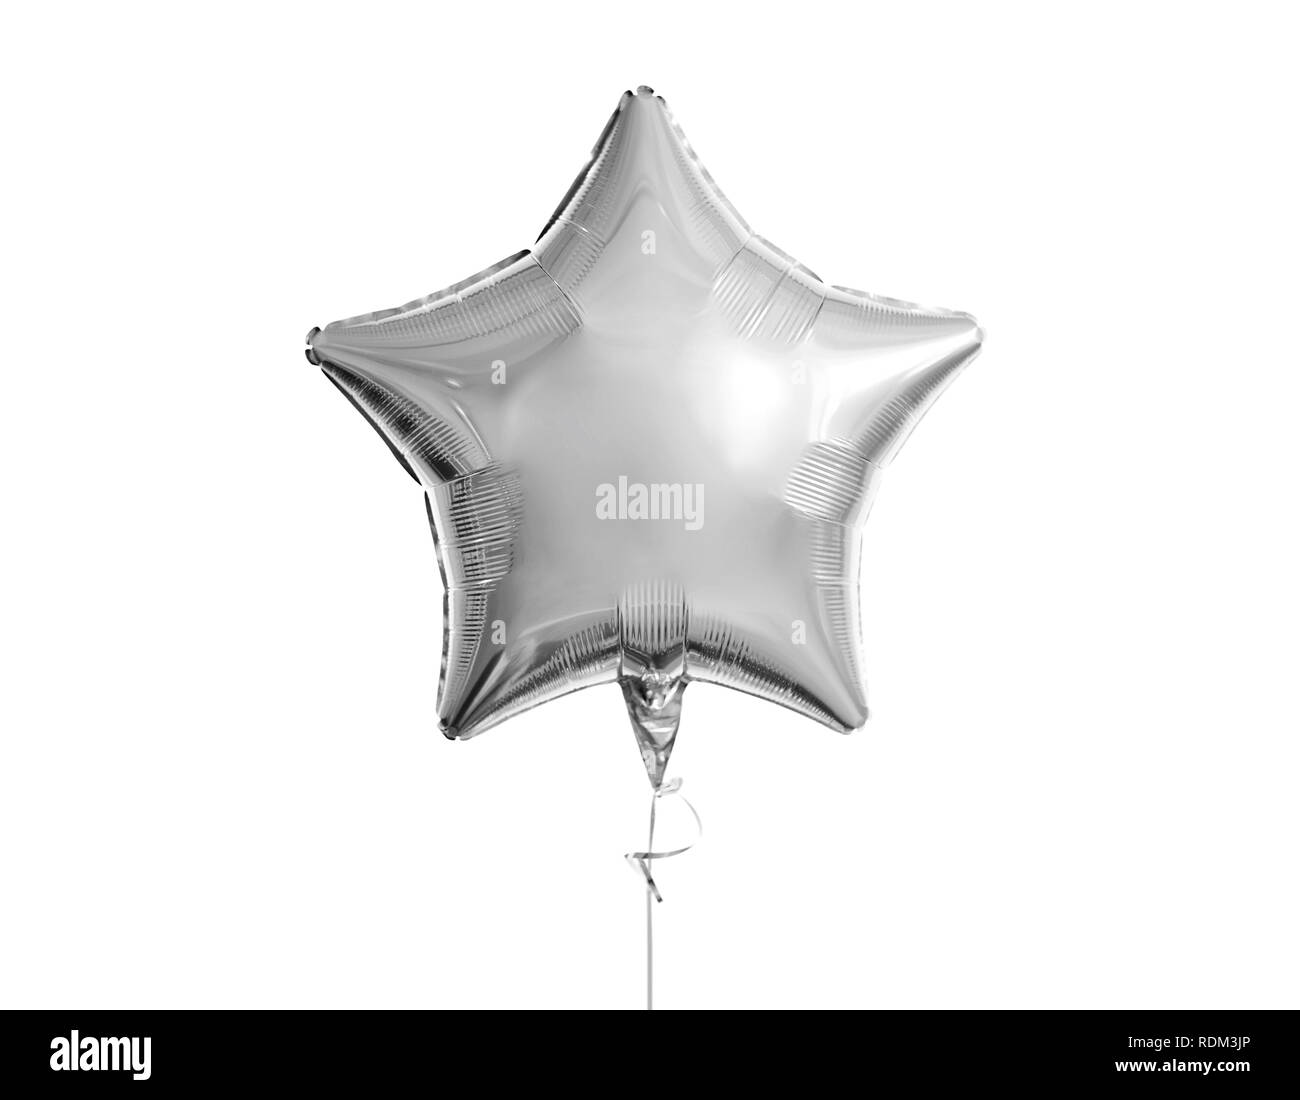 Eine silberne Sterne Ballon über weißen Hintergrund Stockfoto